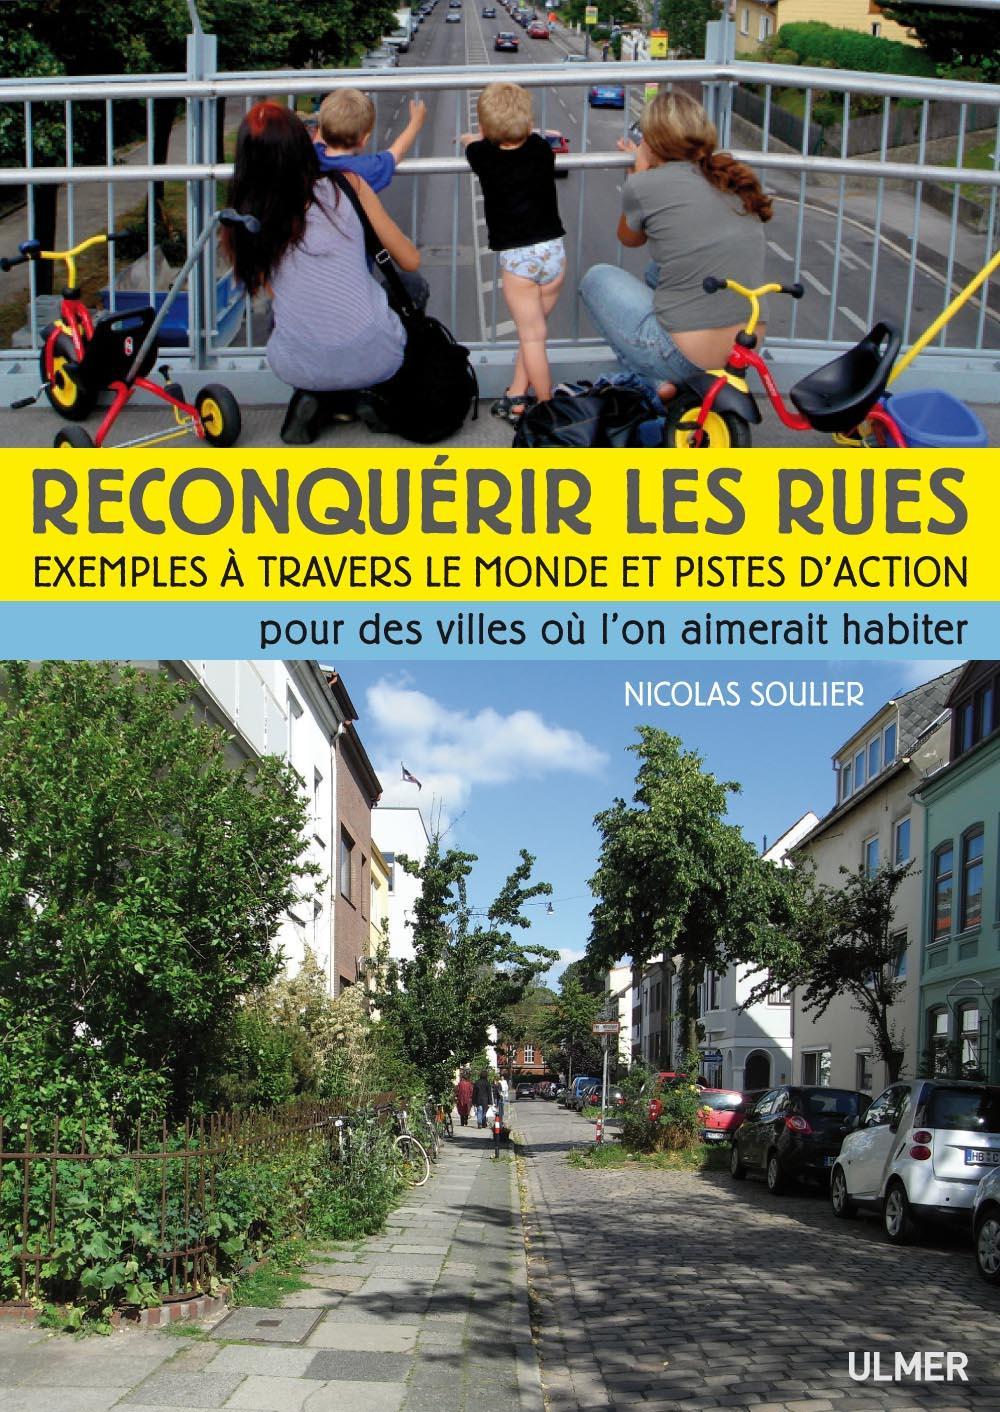 Conférence de Nicolas Soulier à l’occasion de la sortie de son livre « Reconquérir les rues » aux Editions Ulmer- vendredi 18 Mai 2012